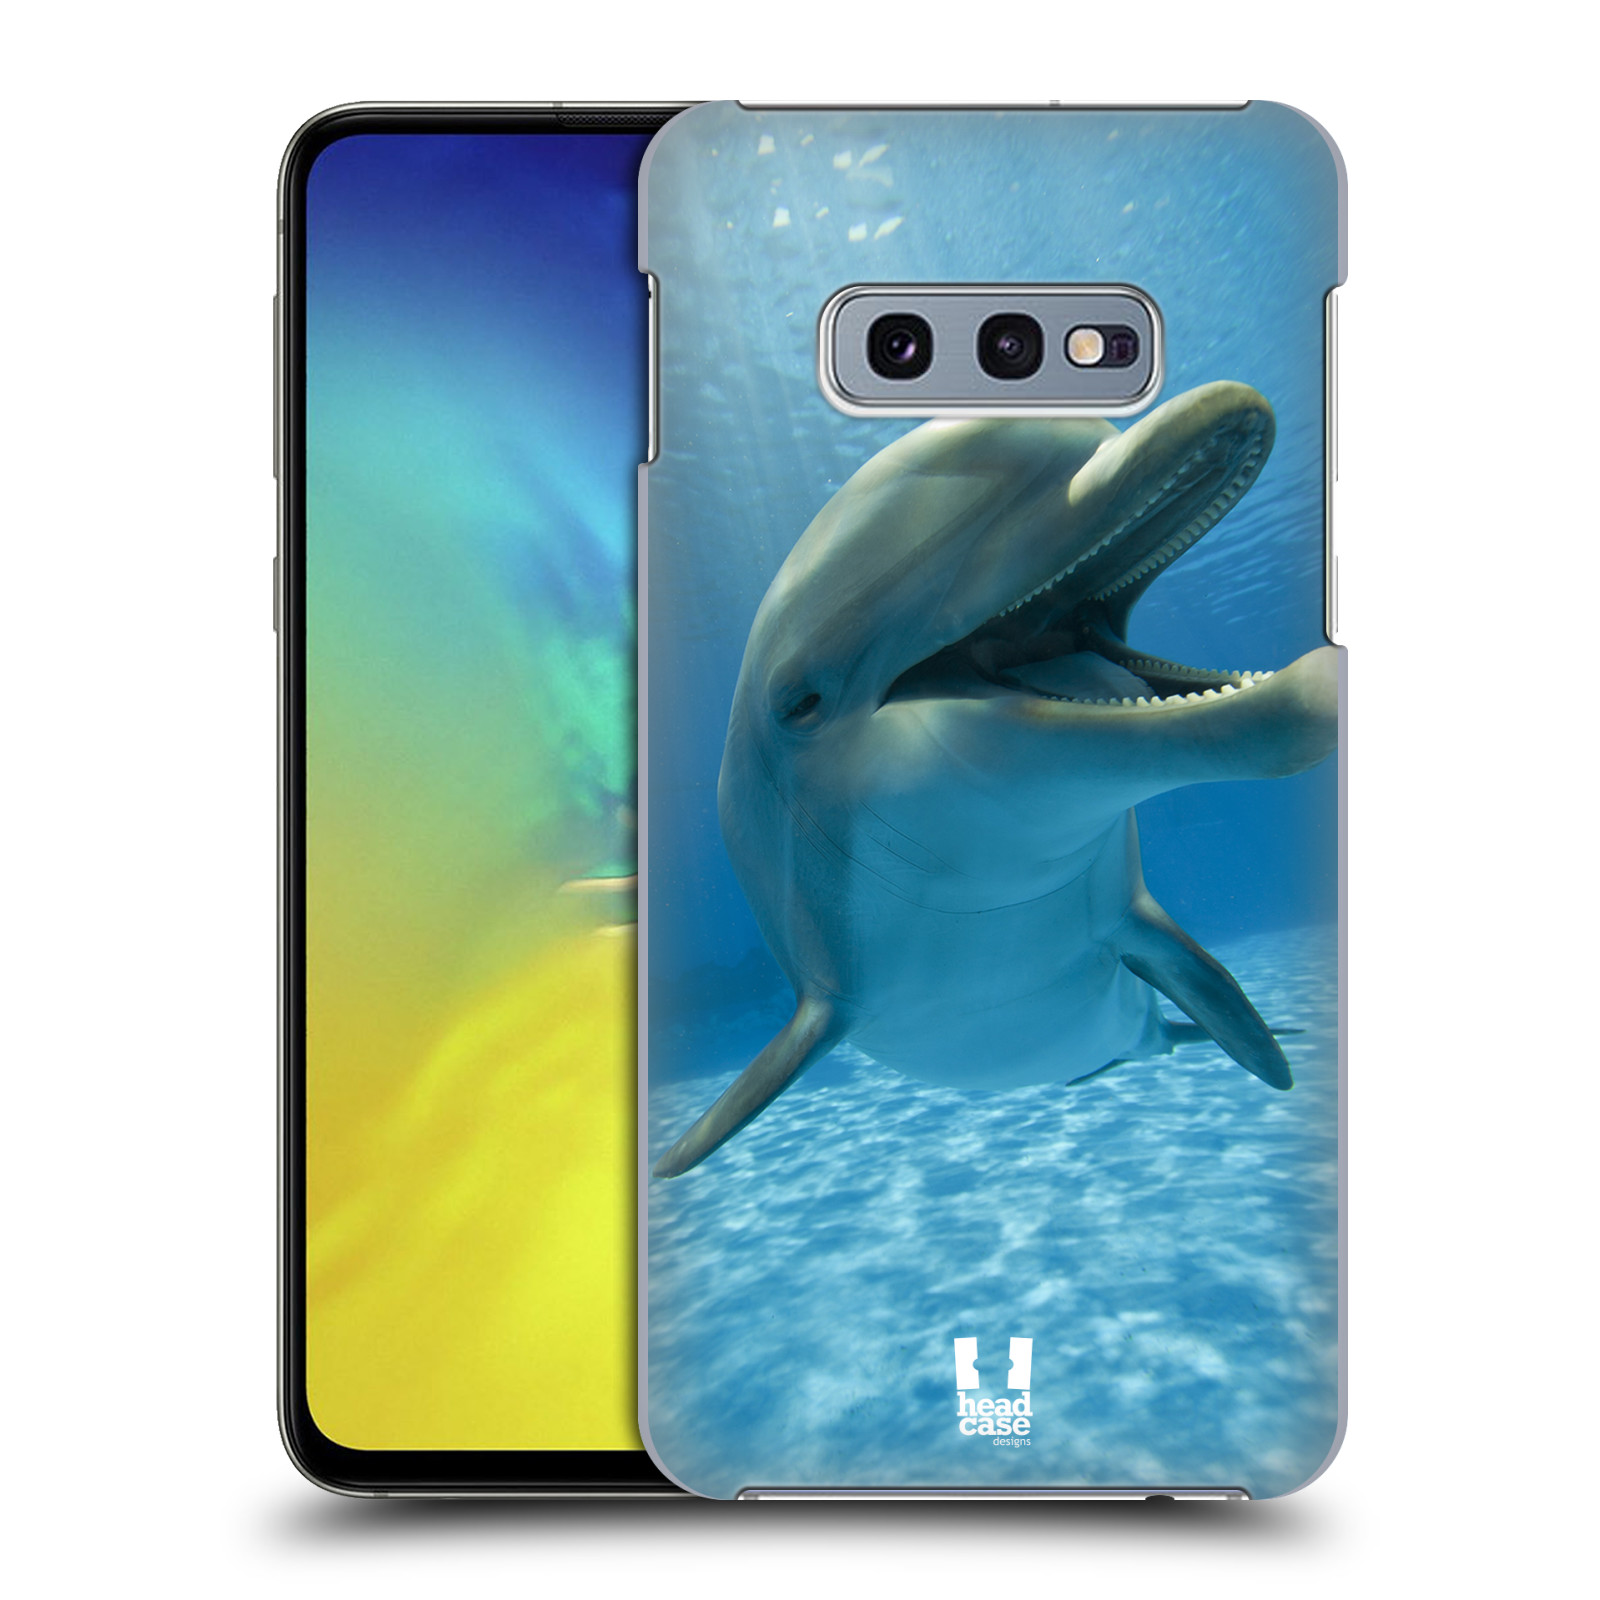 Zadní obal pro mobil Samsung Galaxy S10e - HEAD CASE - Svět zvířat delfín v moři